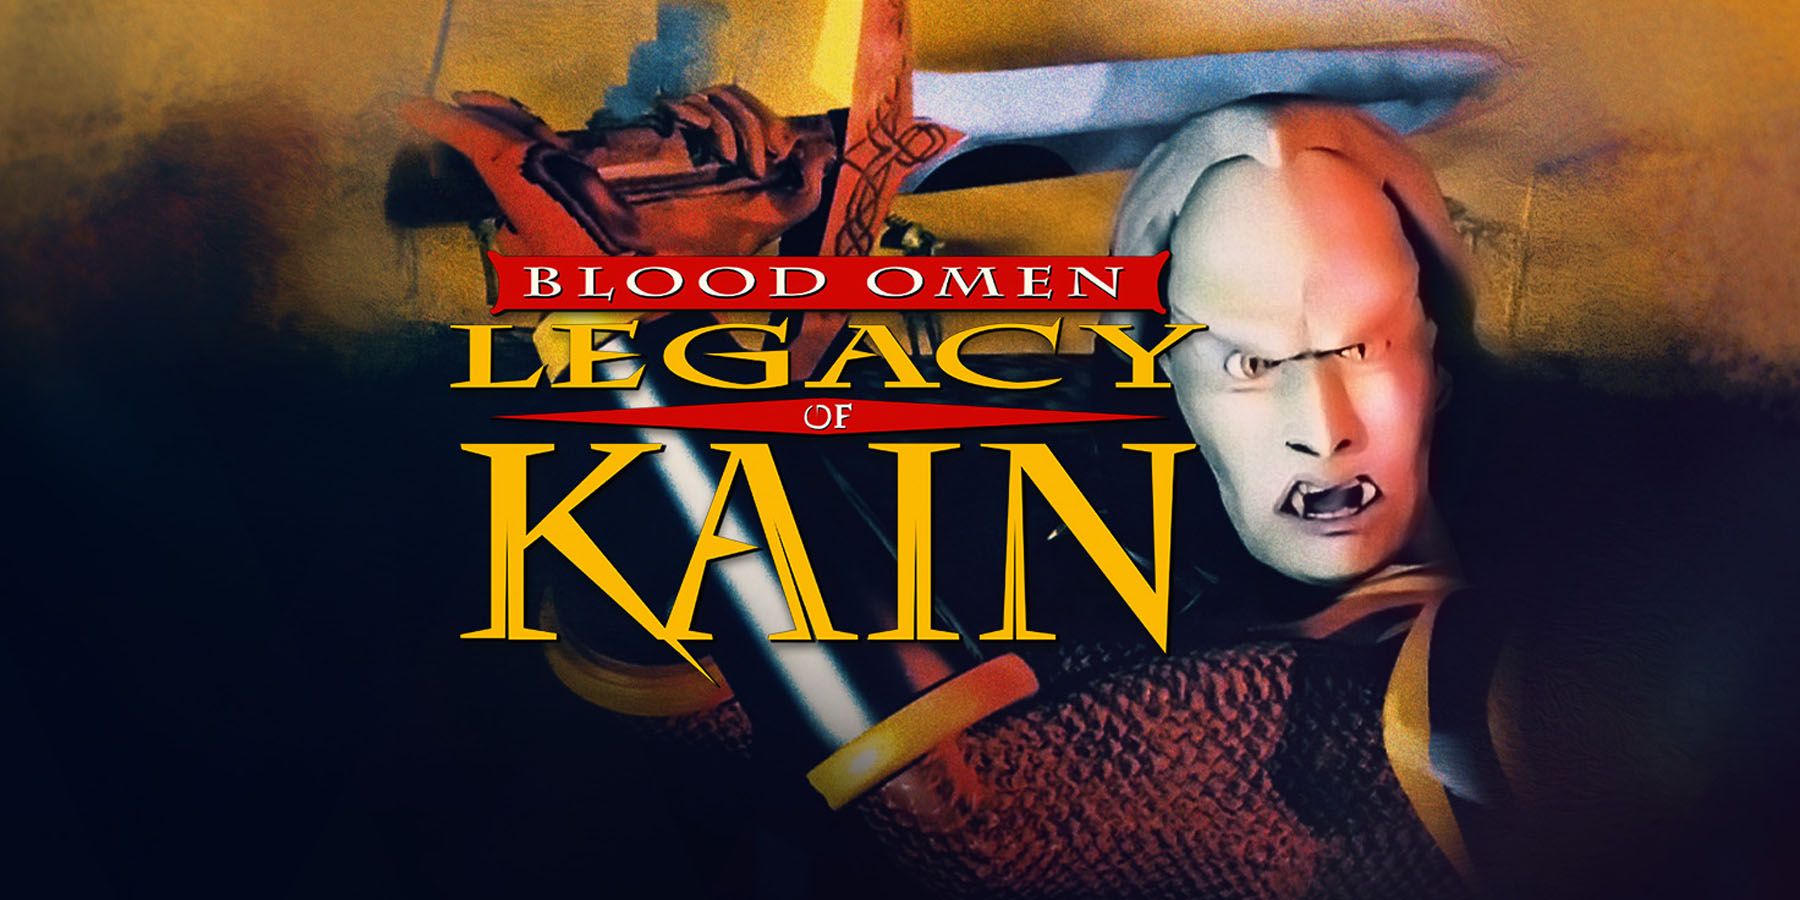 Blood Omen: Legacy of Kain получава модерна PC версия 25 години по-късно